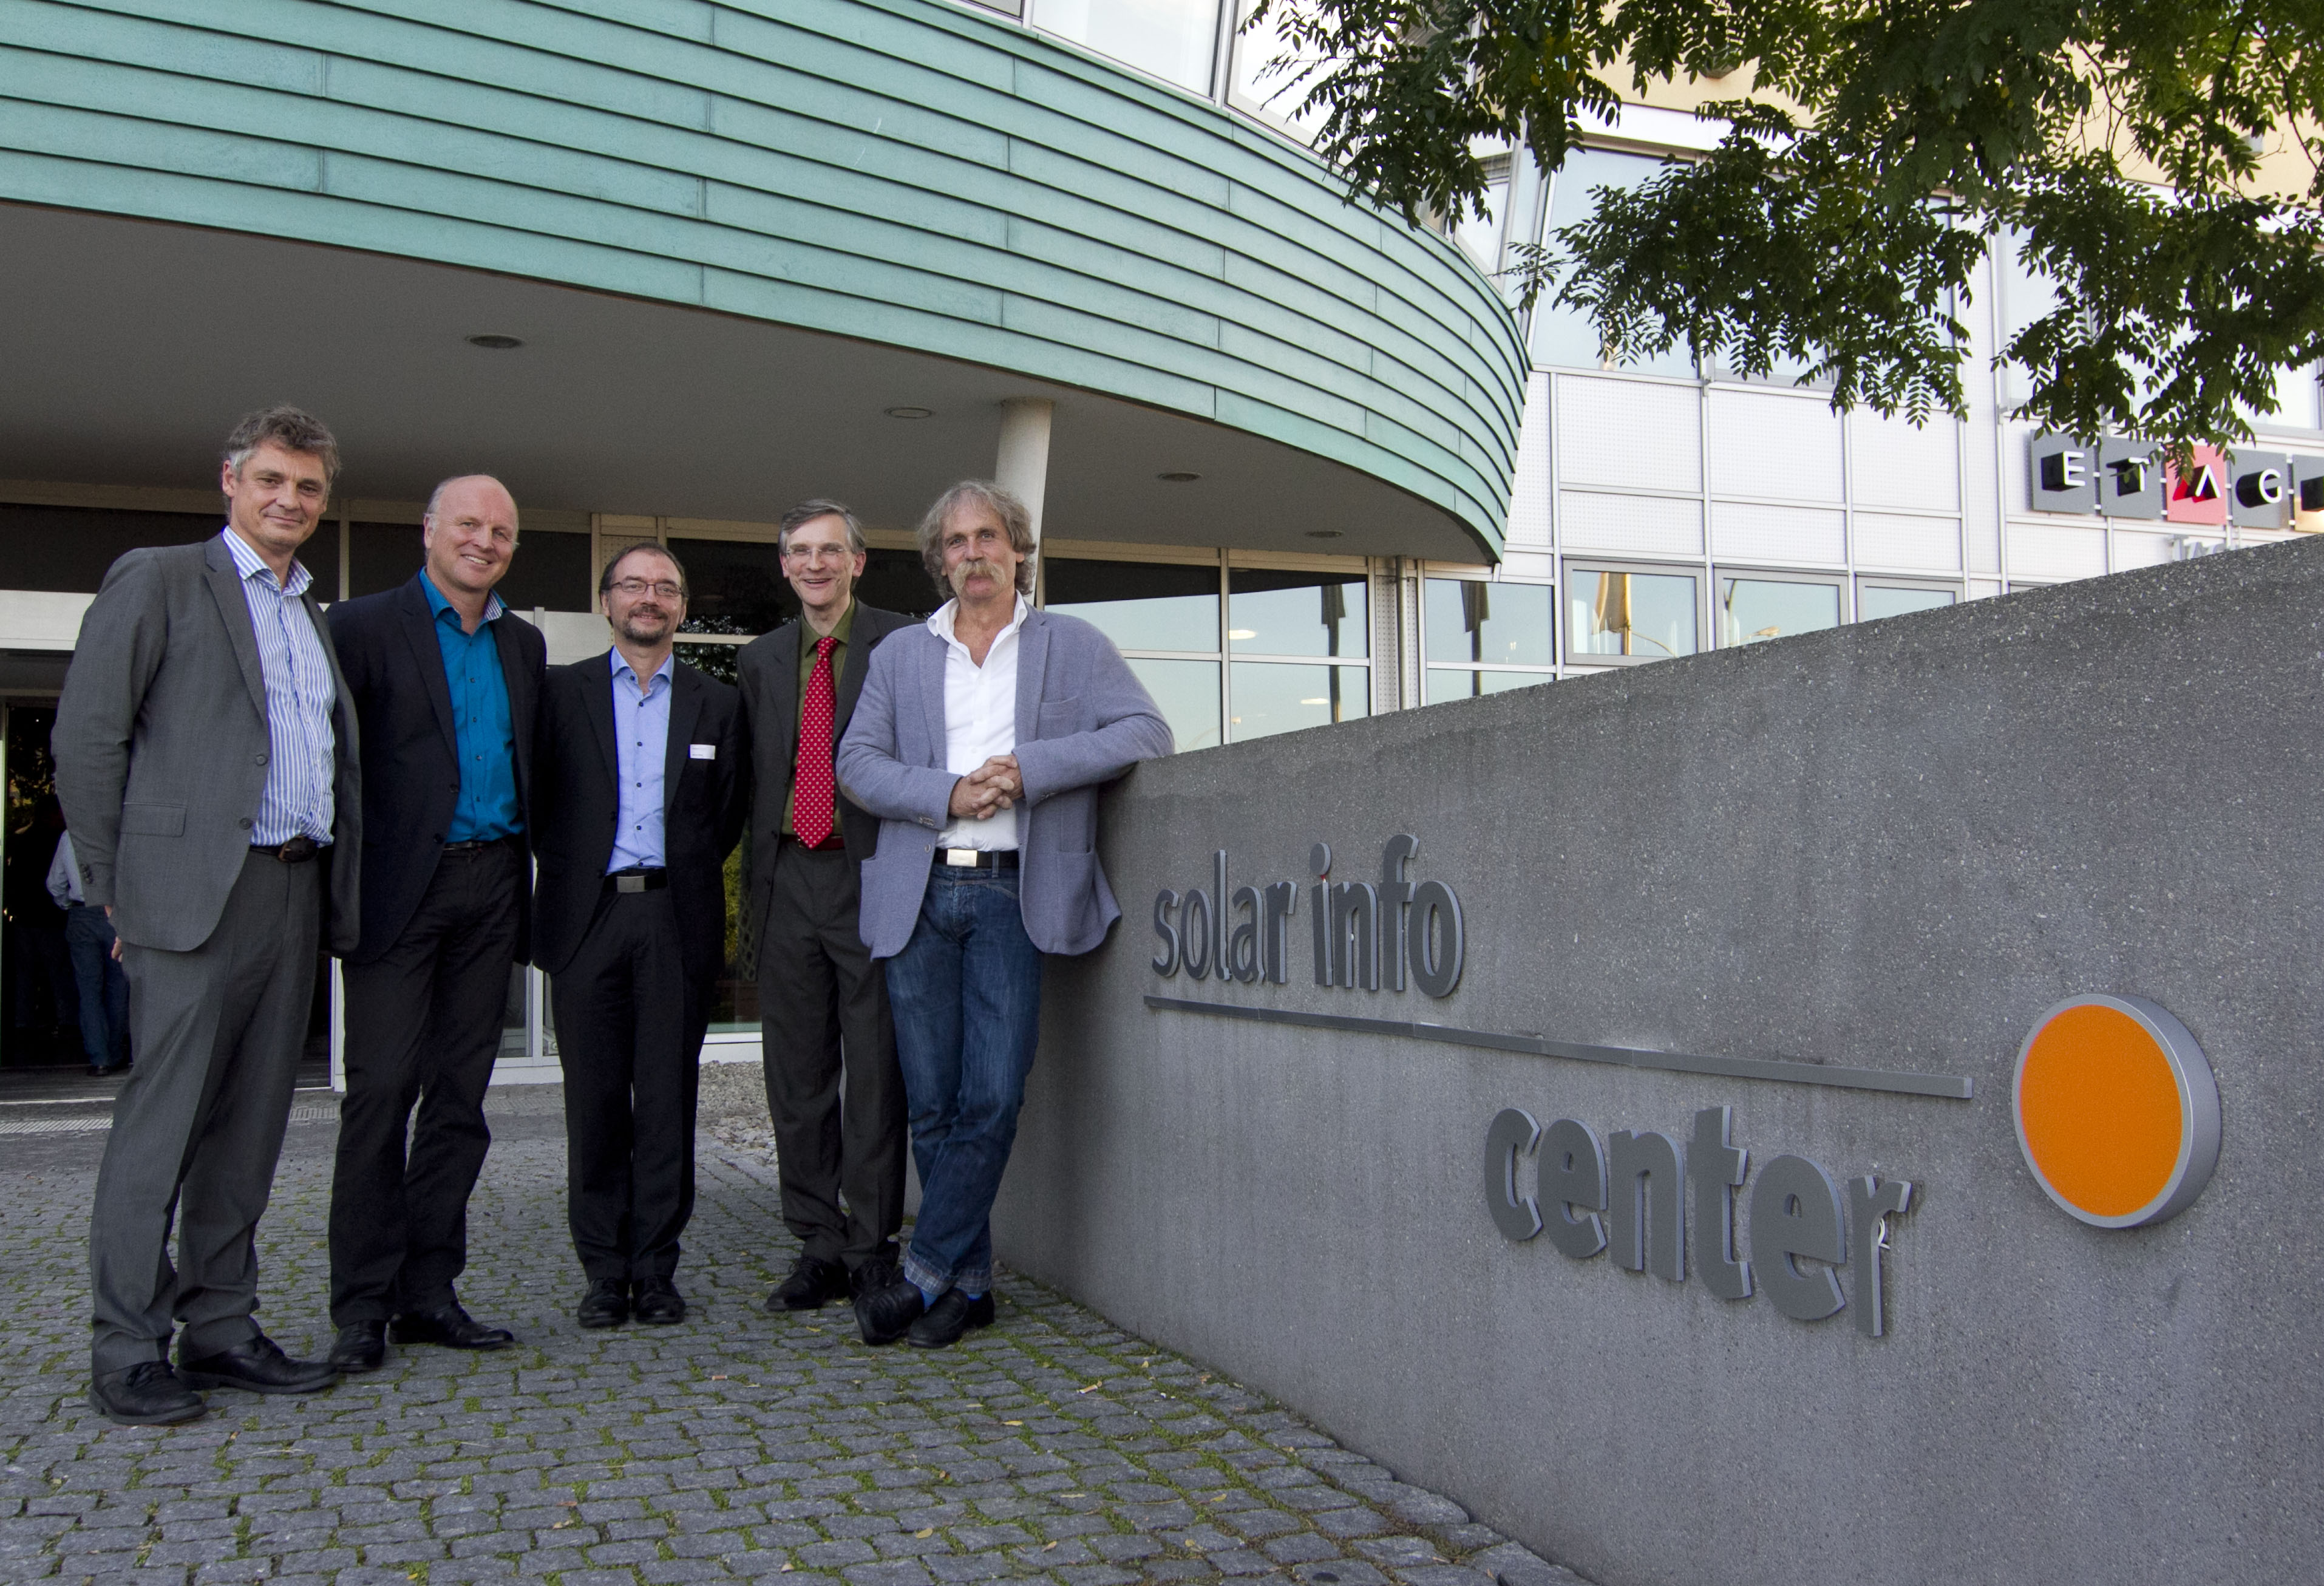 Von links: Rolf Pfeifer (endura kommunal), Rainer Schüle (Energieagentur Regio Freiburg), Martin Ufheil (solares bauen), Per Klabundt (Wirtschaftsverband 100 Prozent), Rolf Buschmann (Solar Info Center). © Center Service SIC